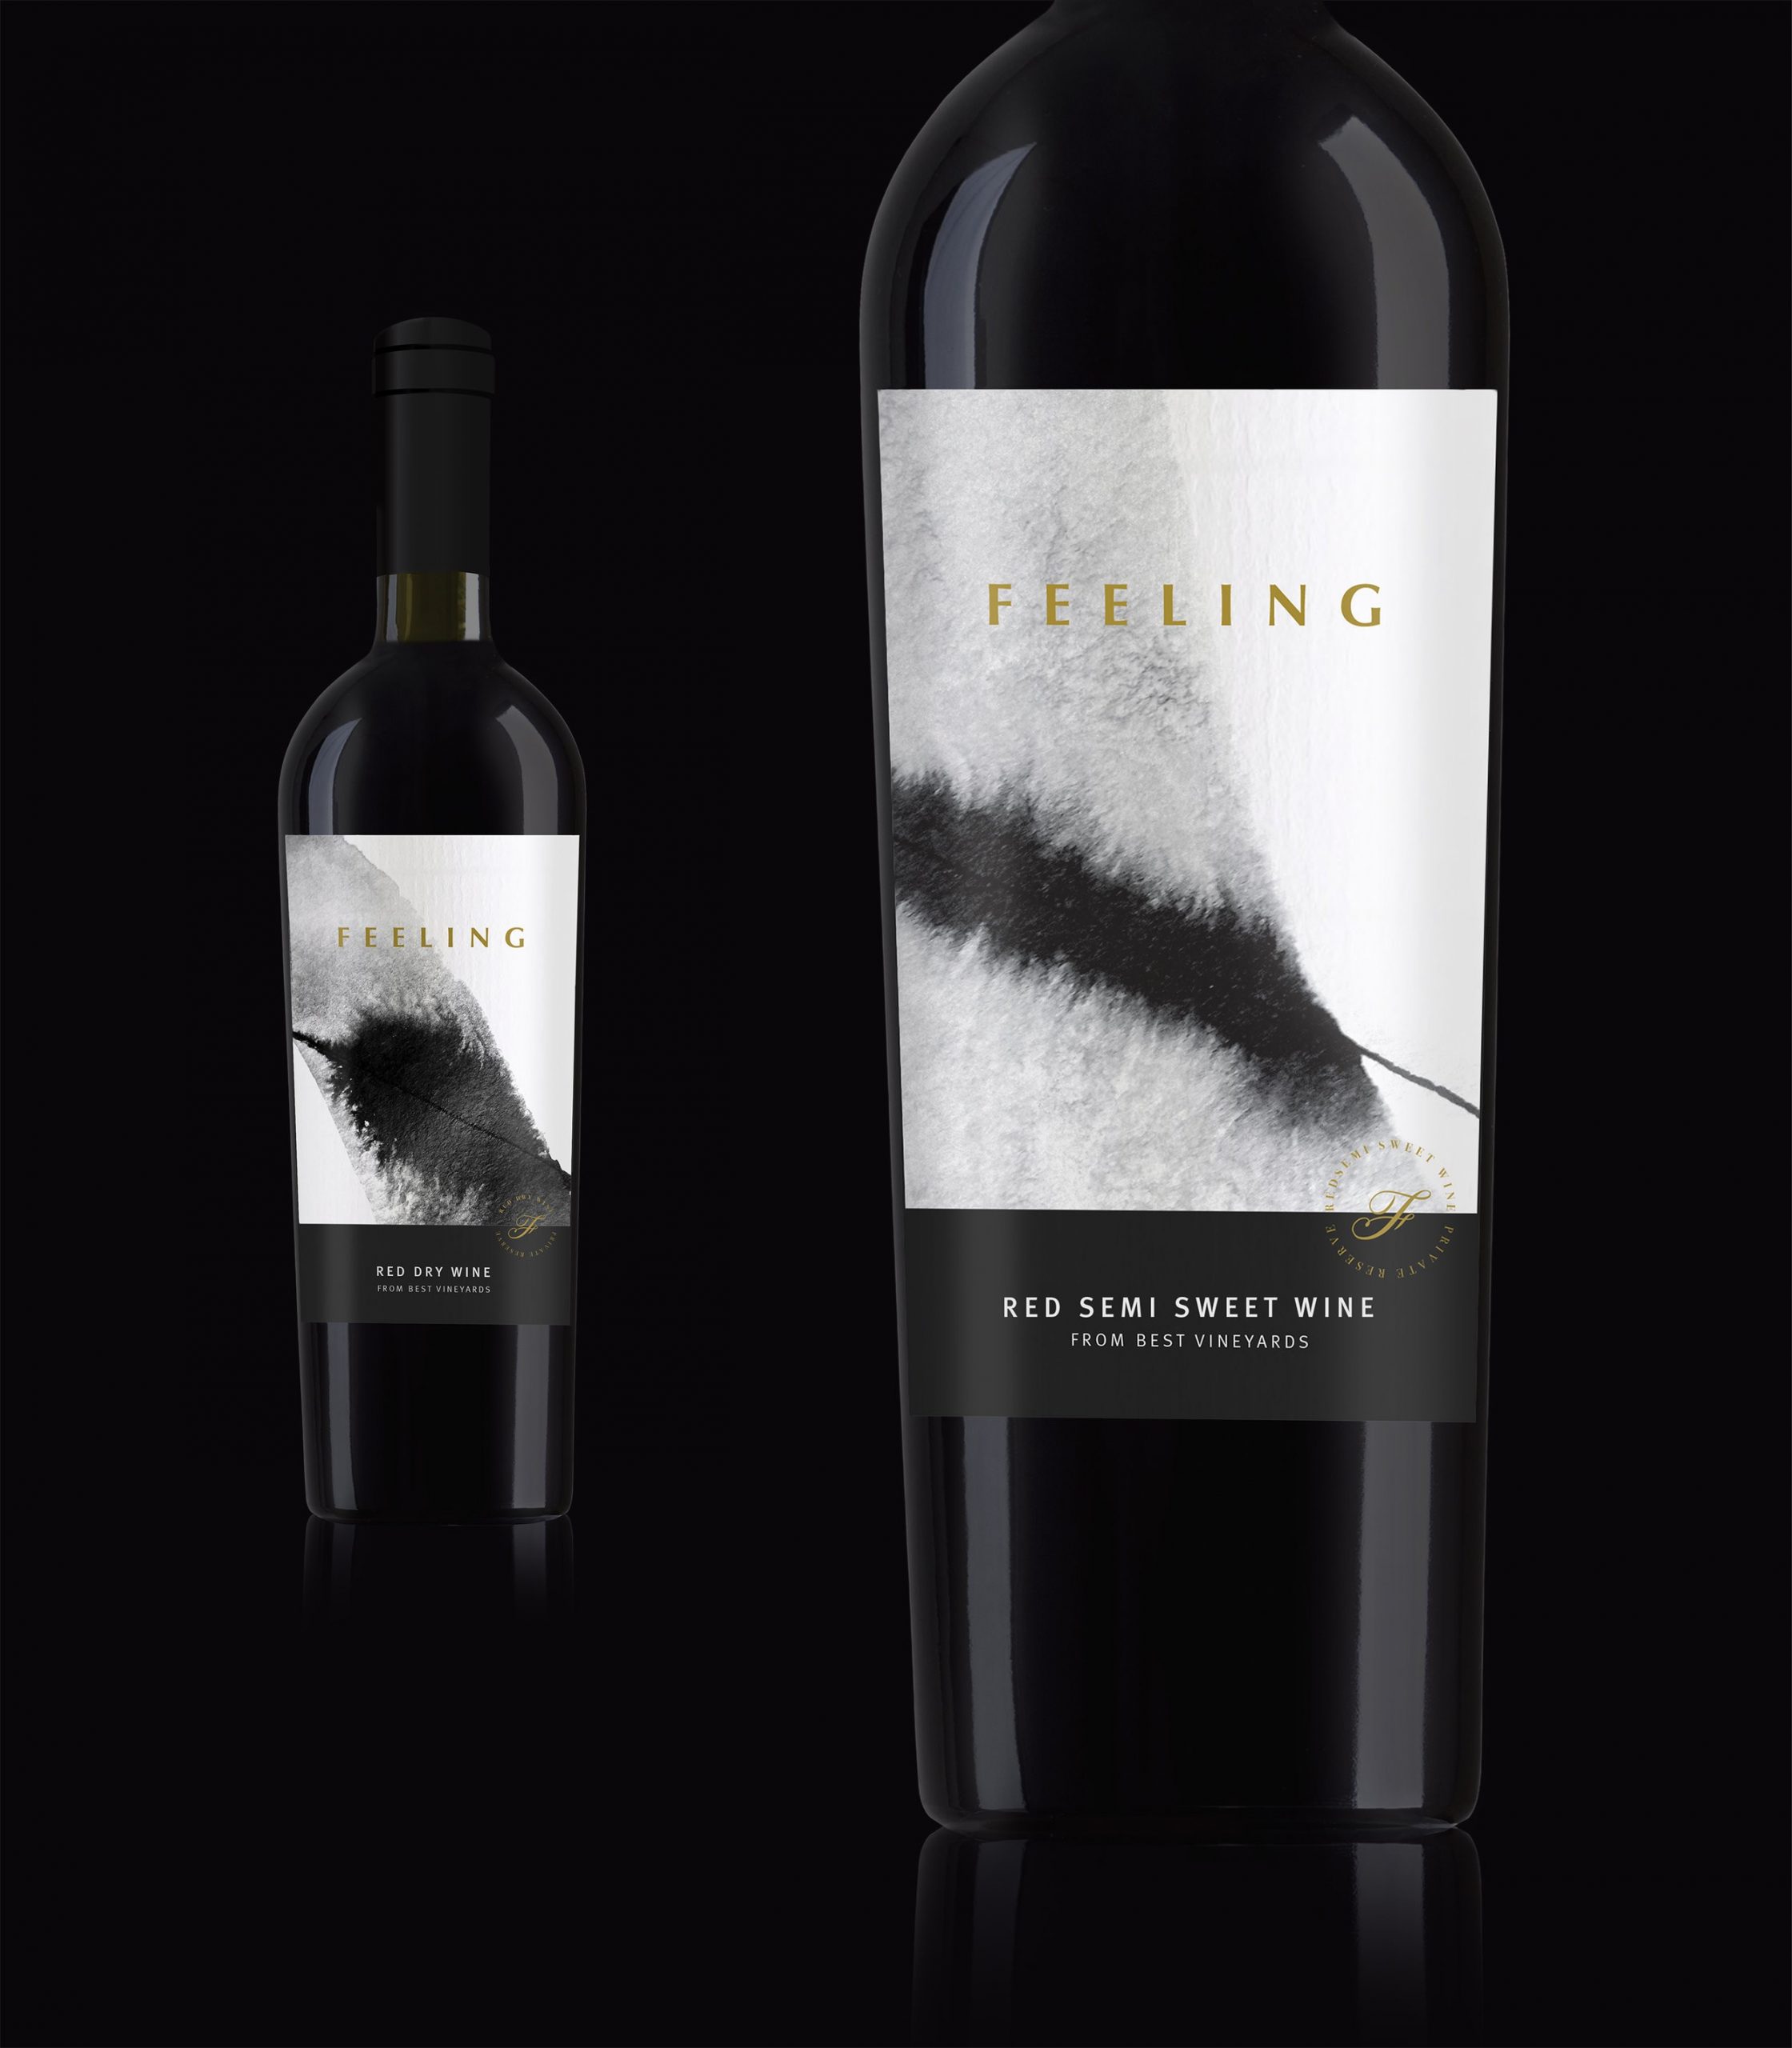 Packaging Design for Feeling Wine from Armenia